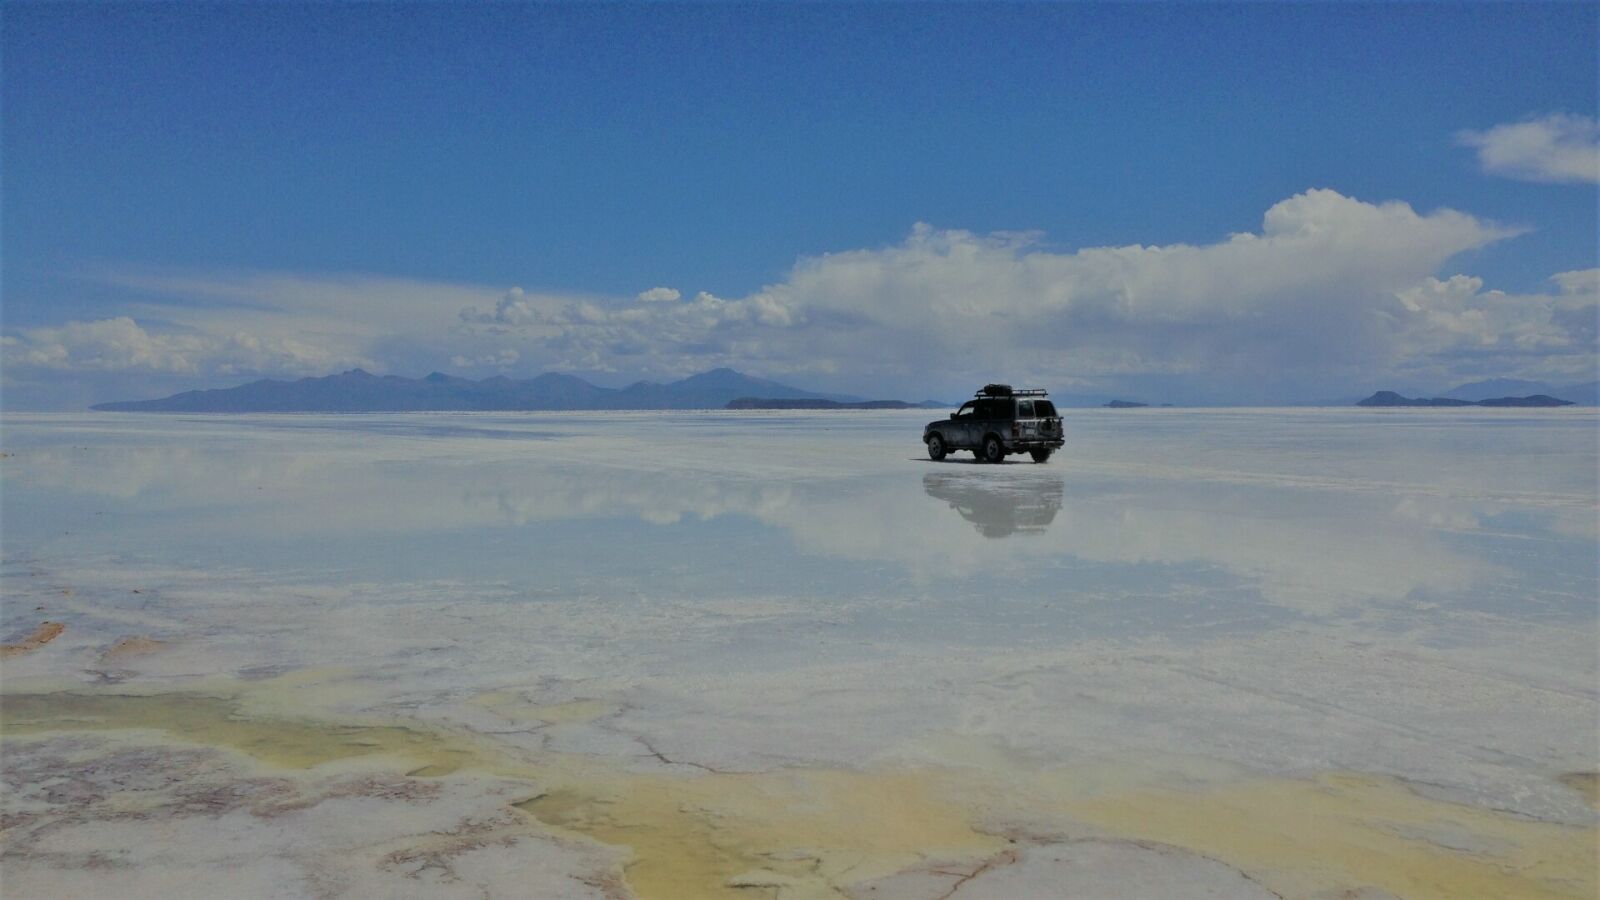 Apple iPhone 5c sample photo. Salt plain, landscape, nature photography